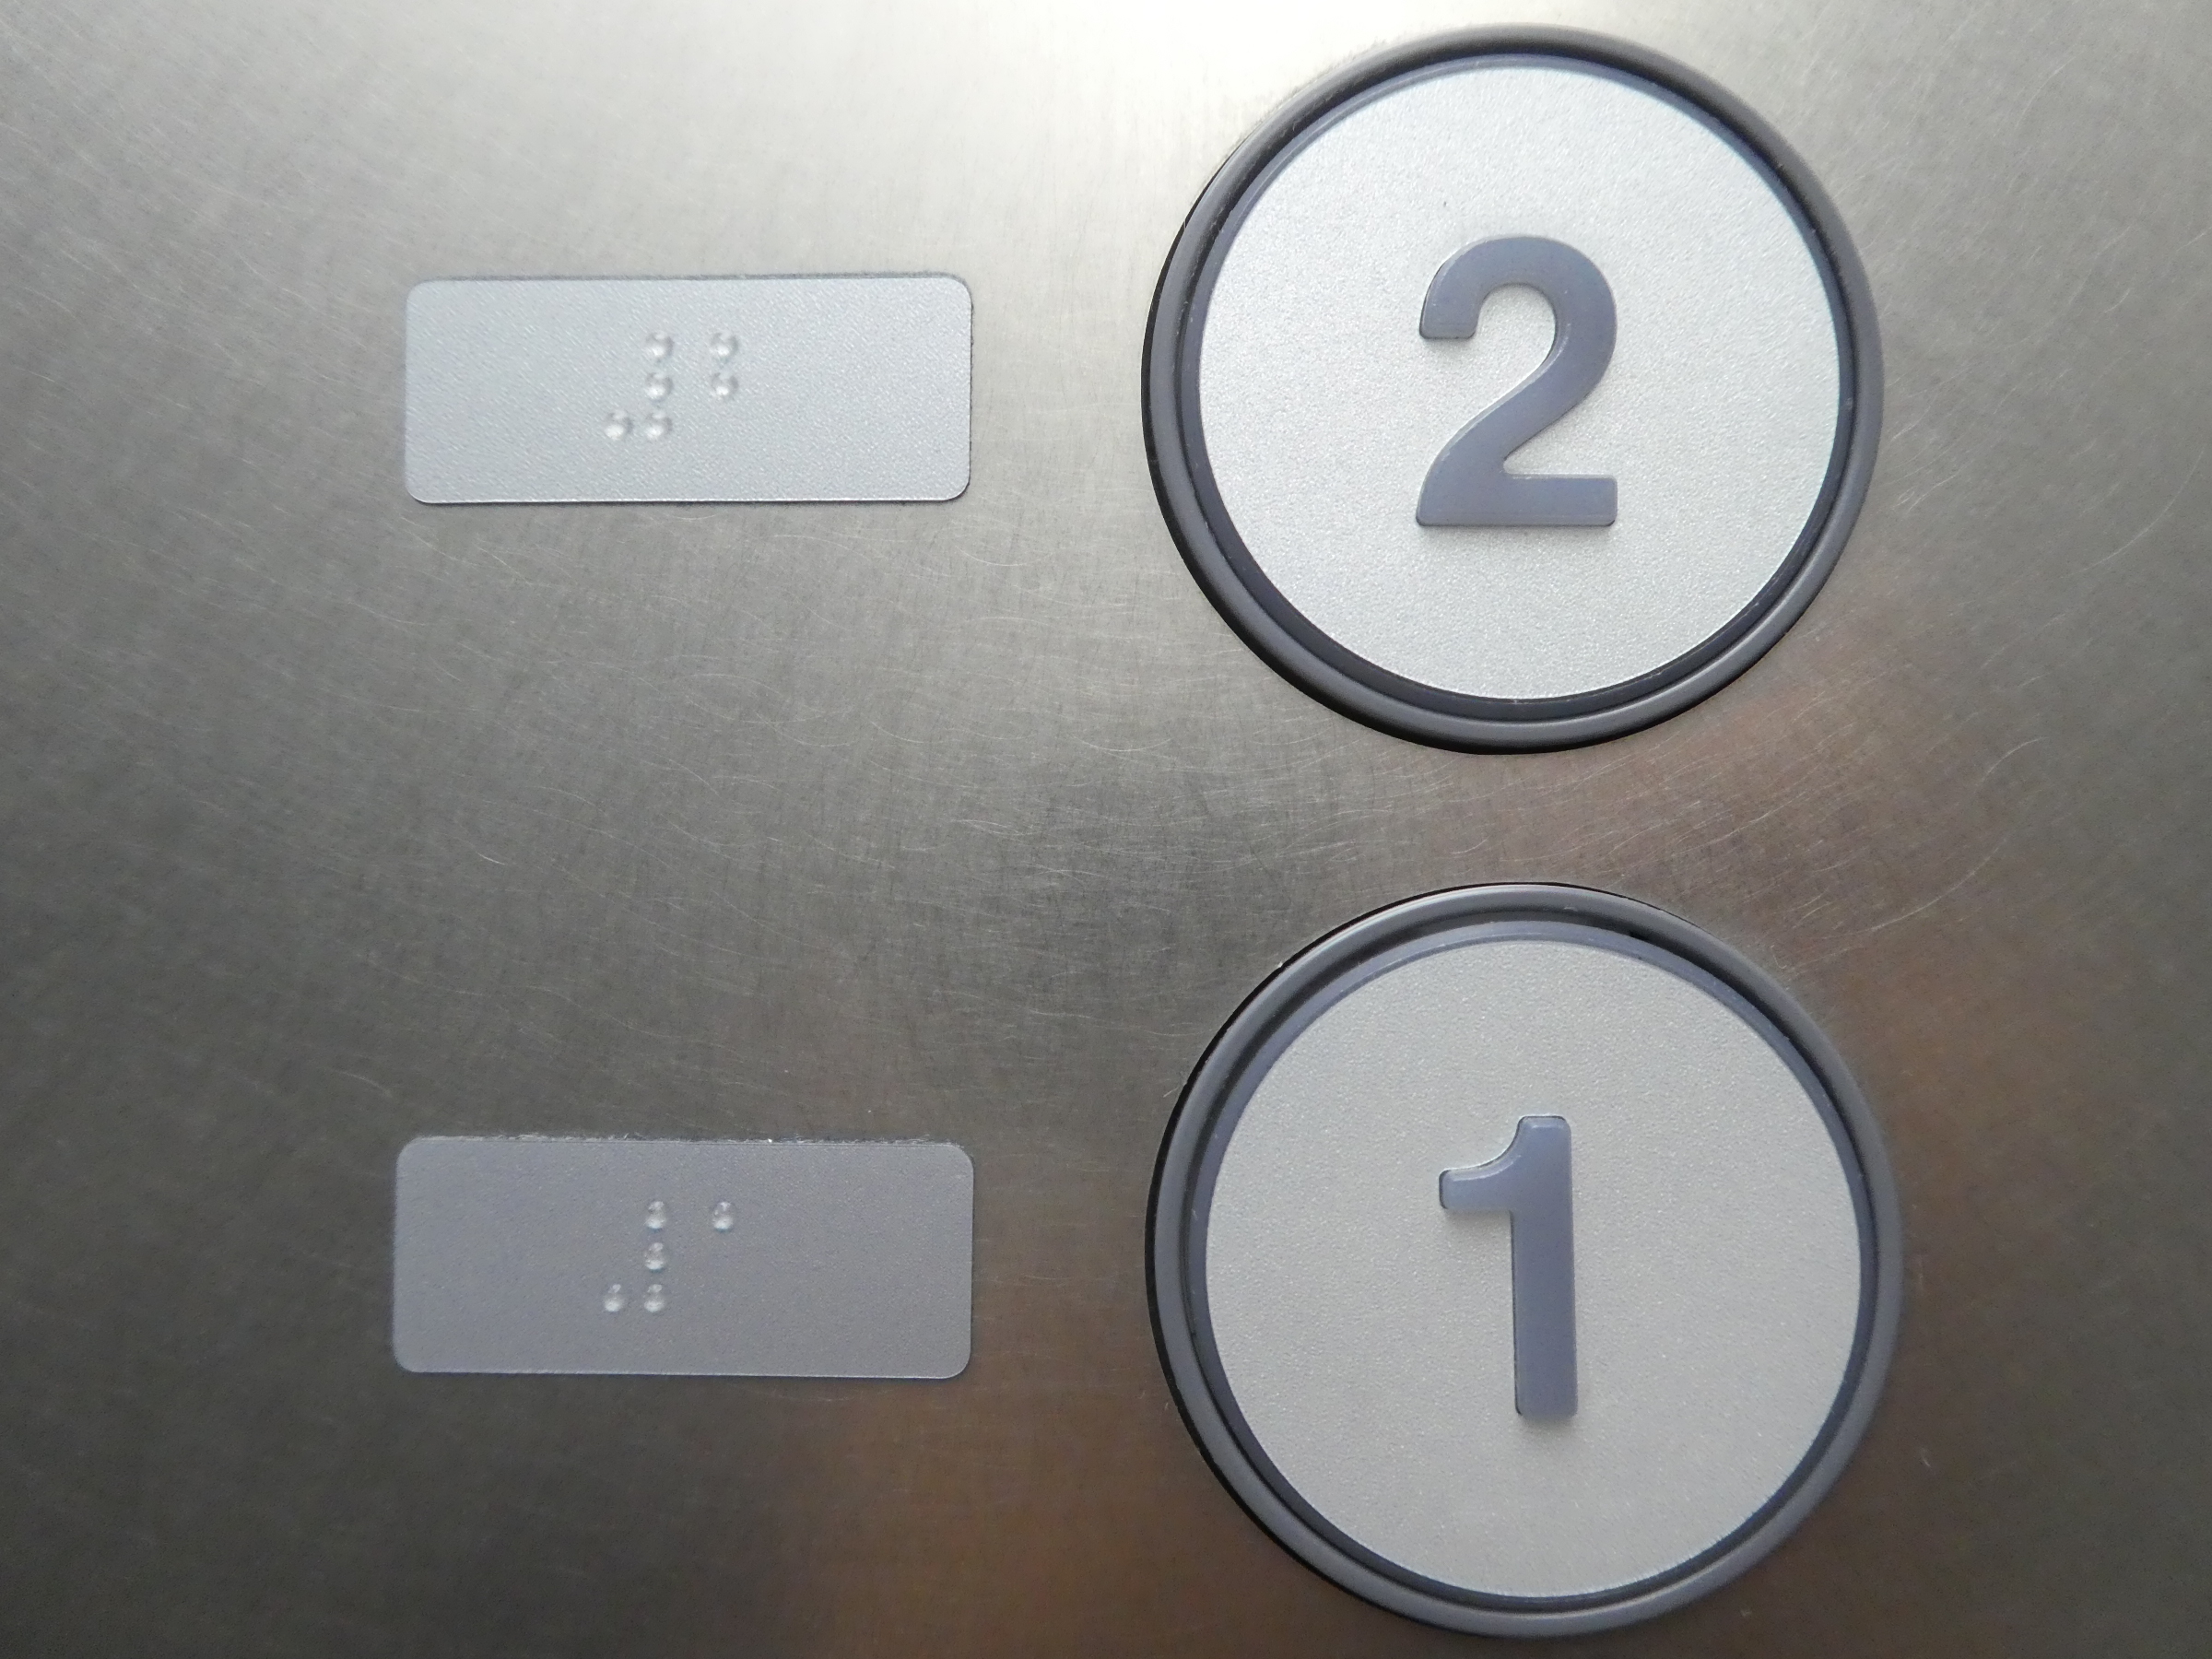 エレベーターのボタン2の画像。